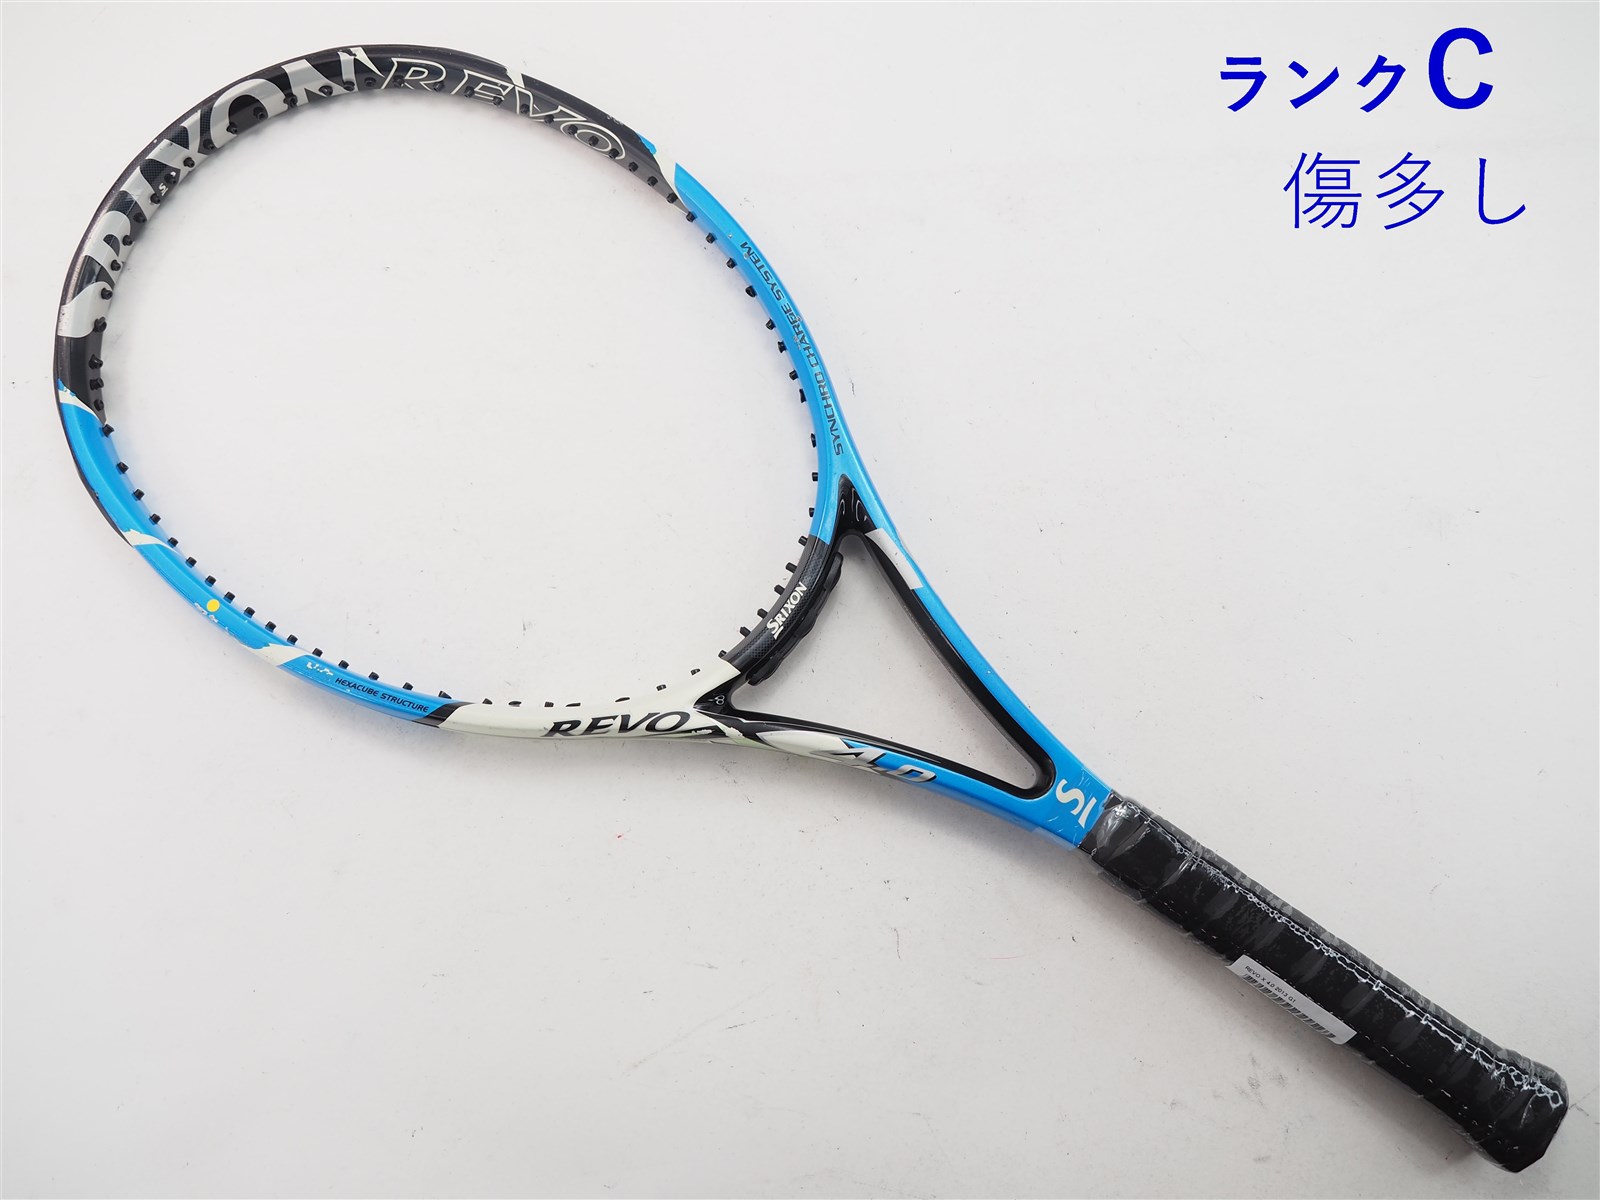 テニスラケット スリクソン レヴォ エックス 4.0 2013年モデル (G1